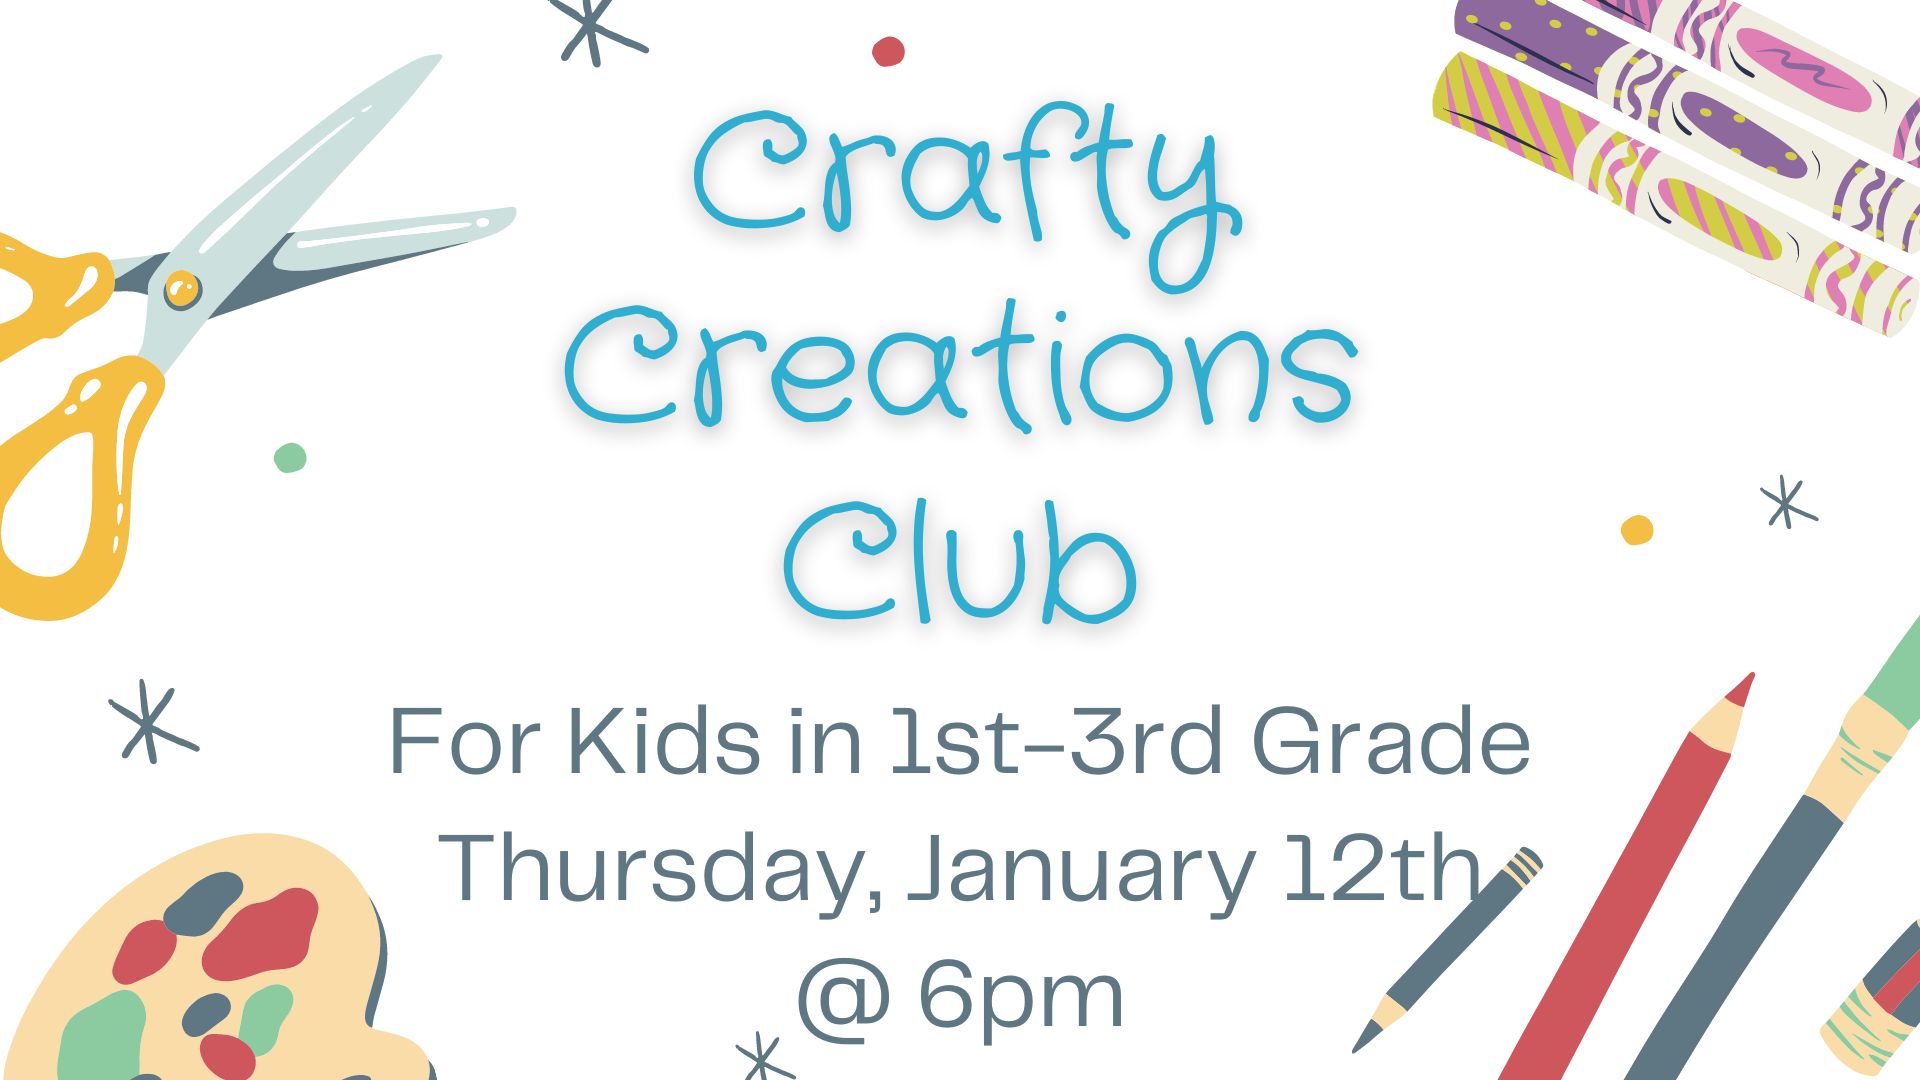 Flyer for Crafty Creations Club